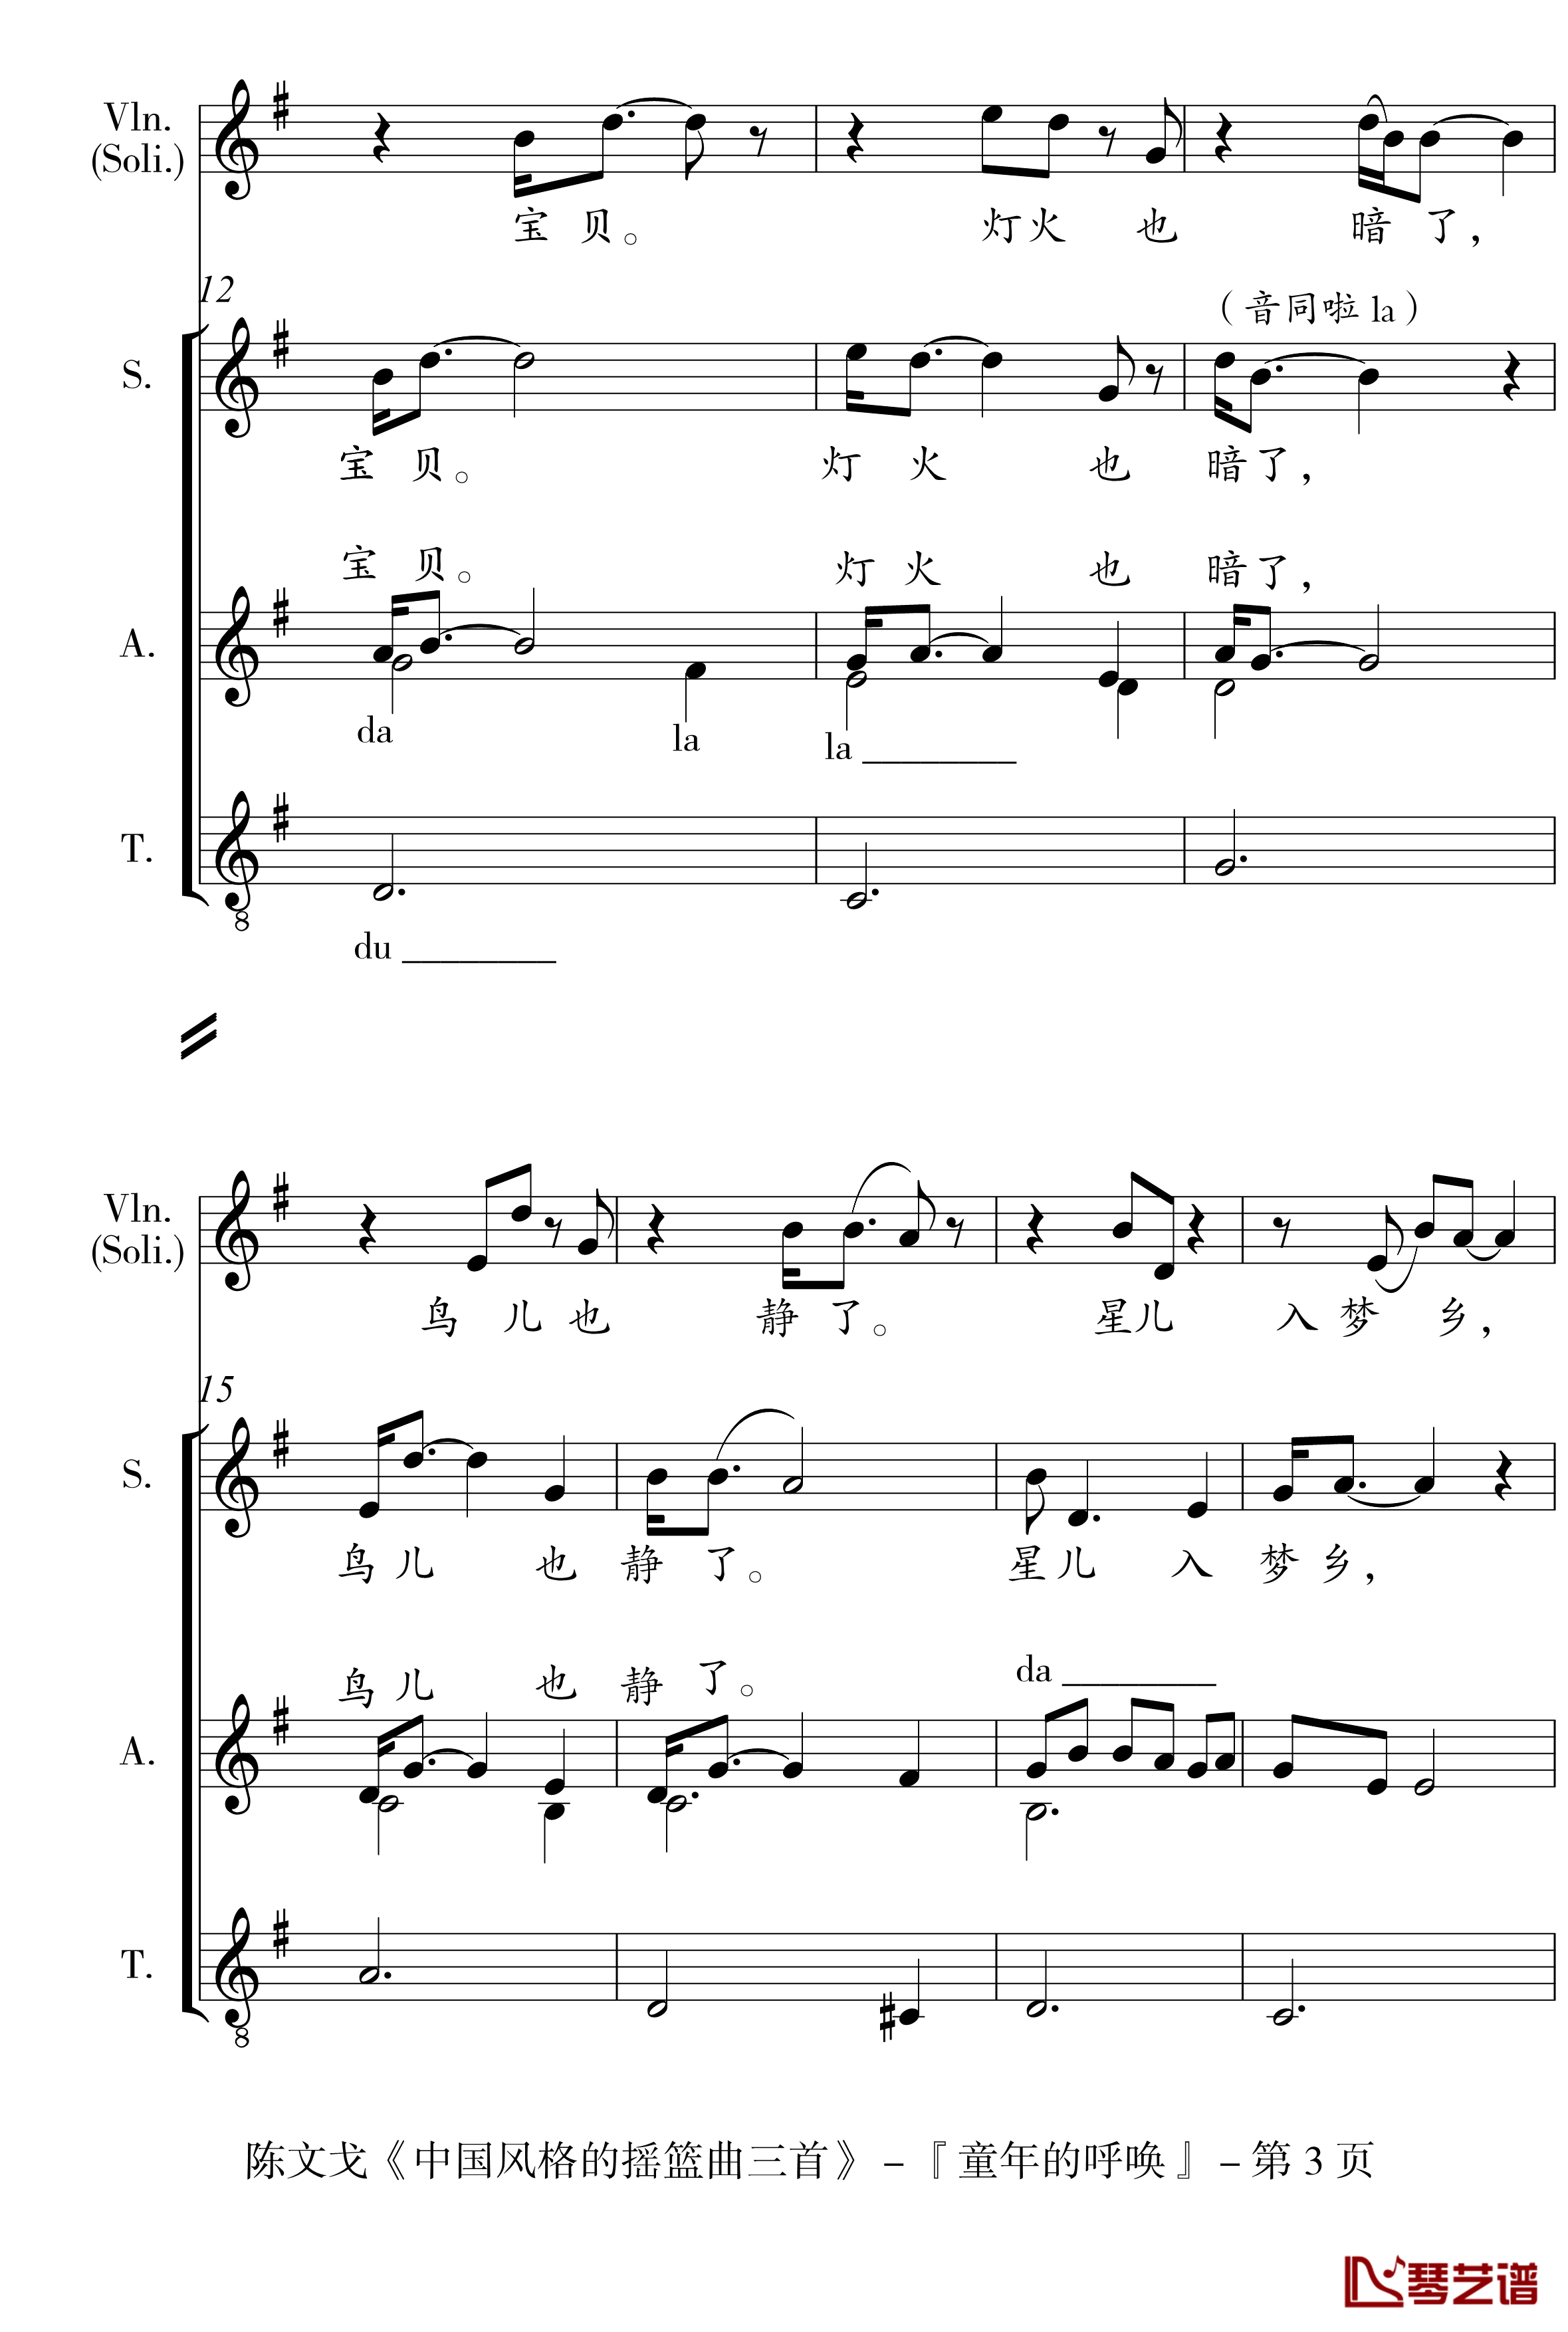 中国风格的合唱摇篮曲三首钢琴谱-I, II, III-陈文戈3